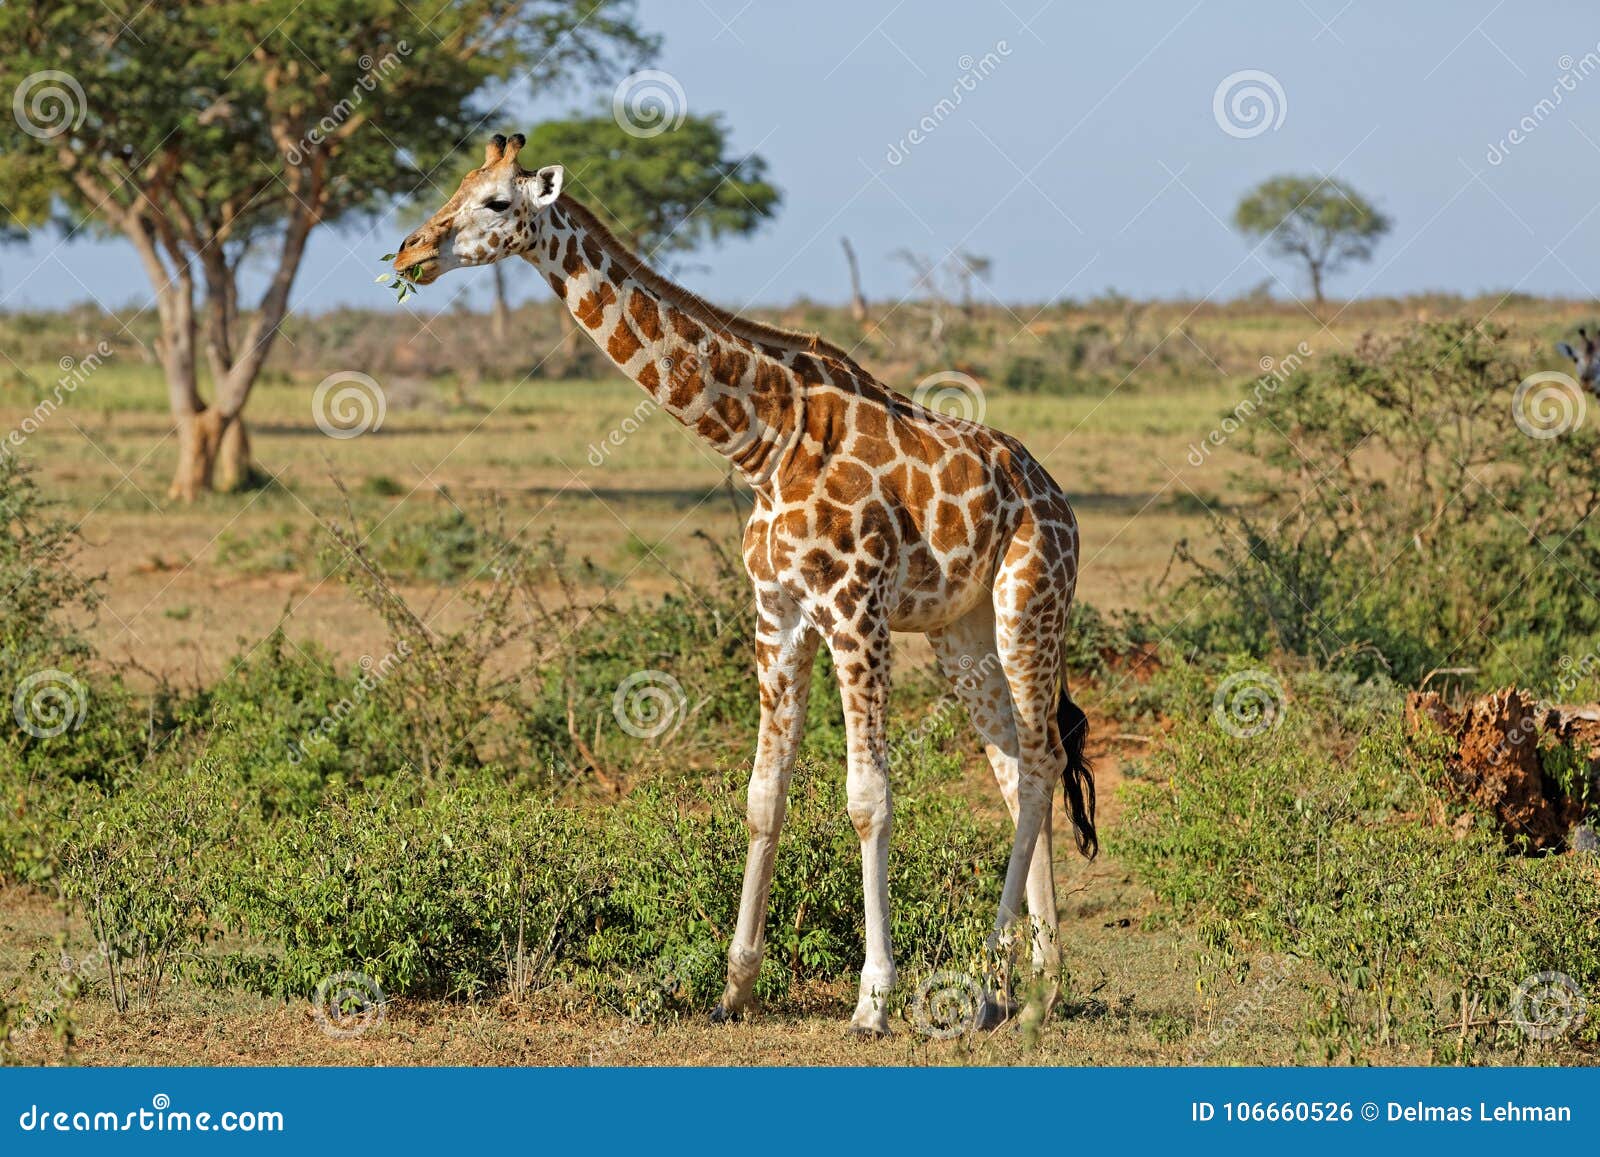 giraffe at murchison falls uganda